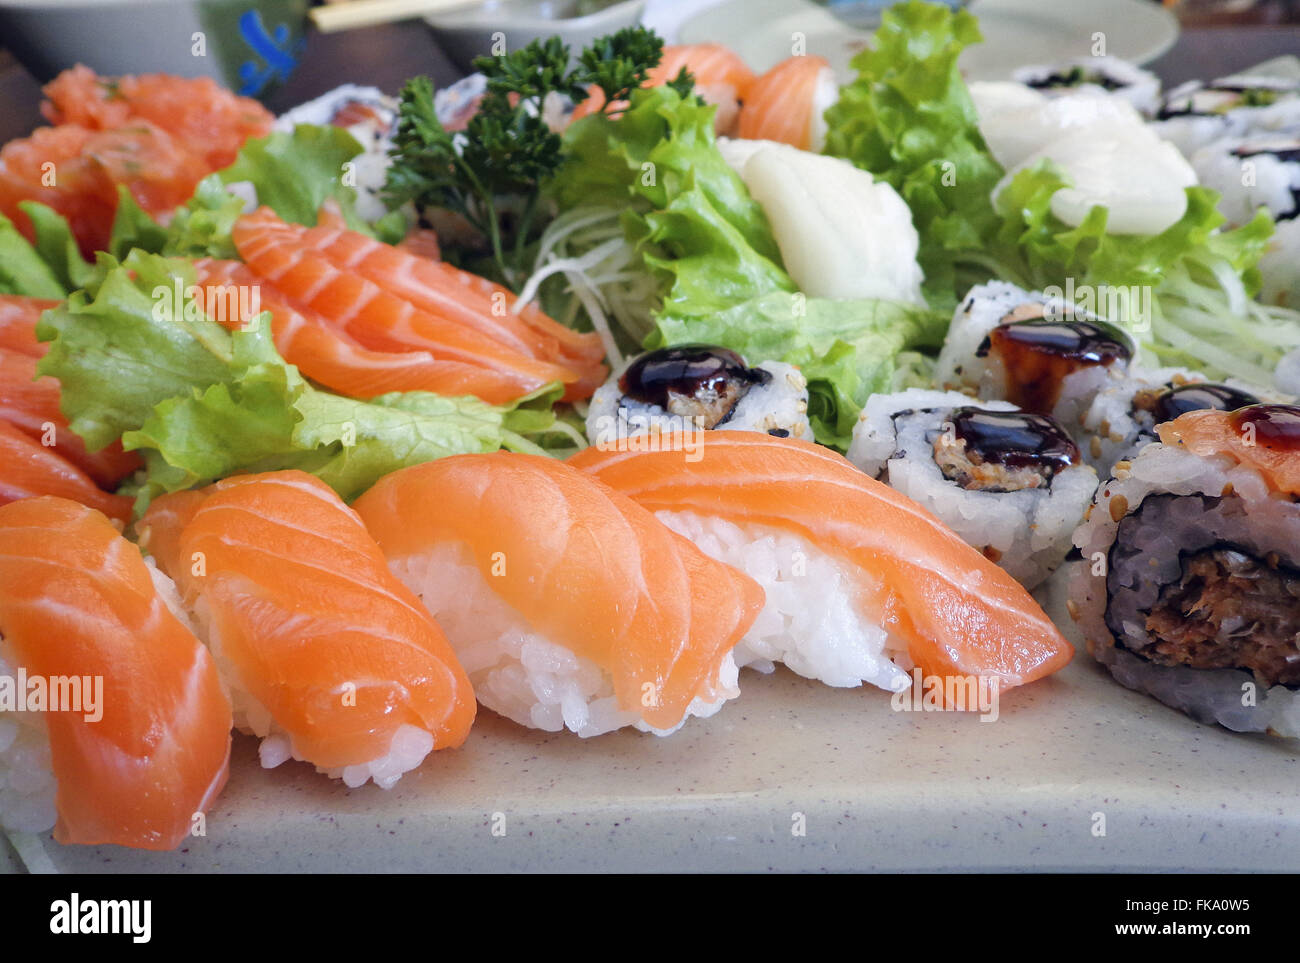 Japanese food - sushi and sashimi Stock Photo